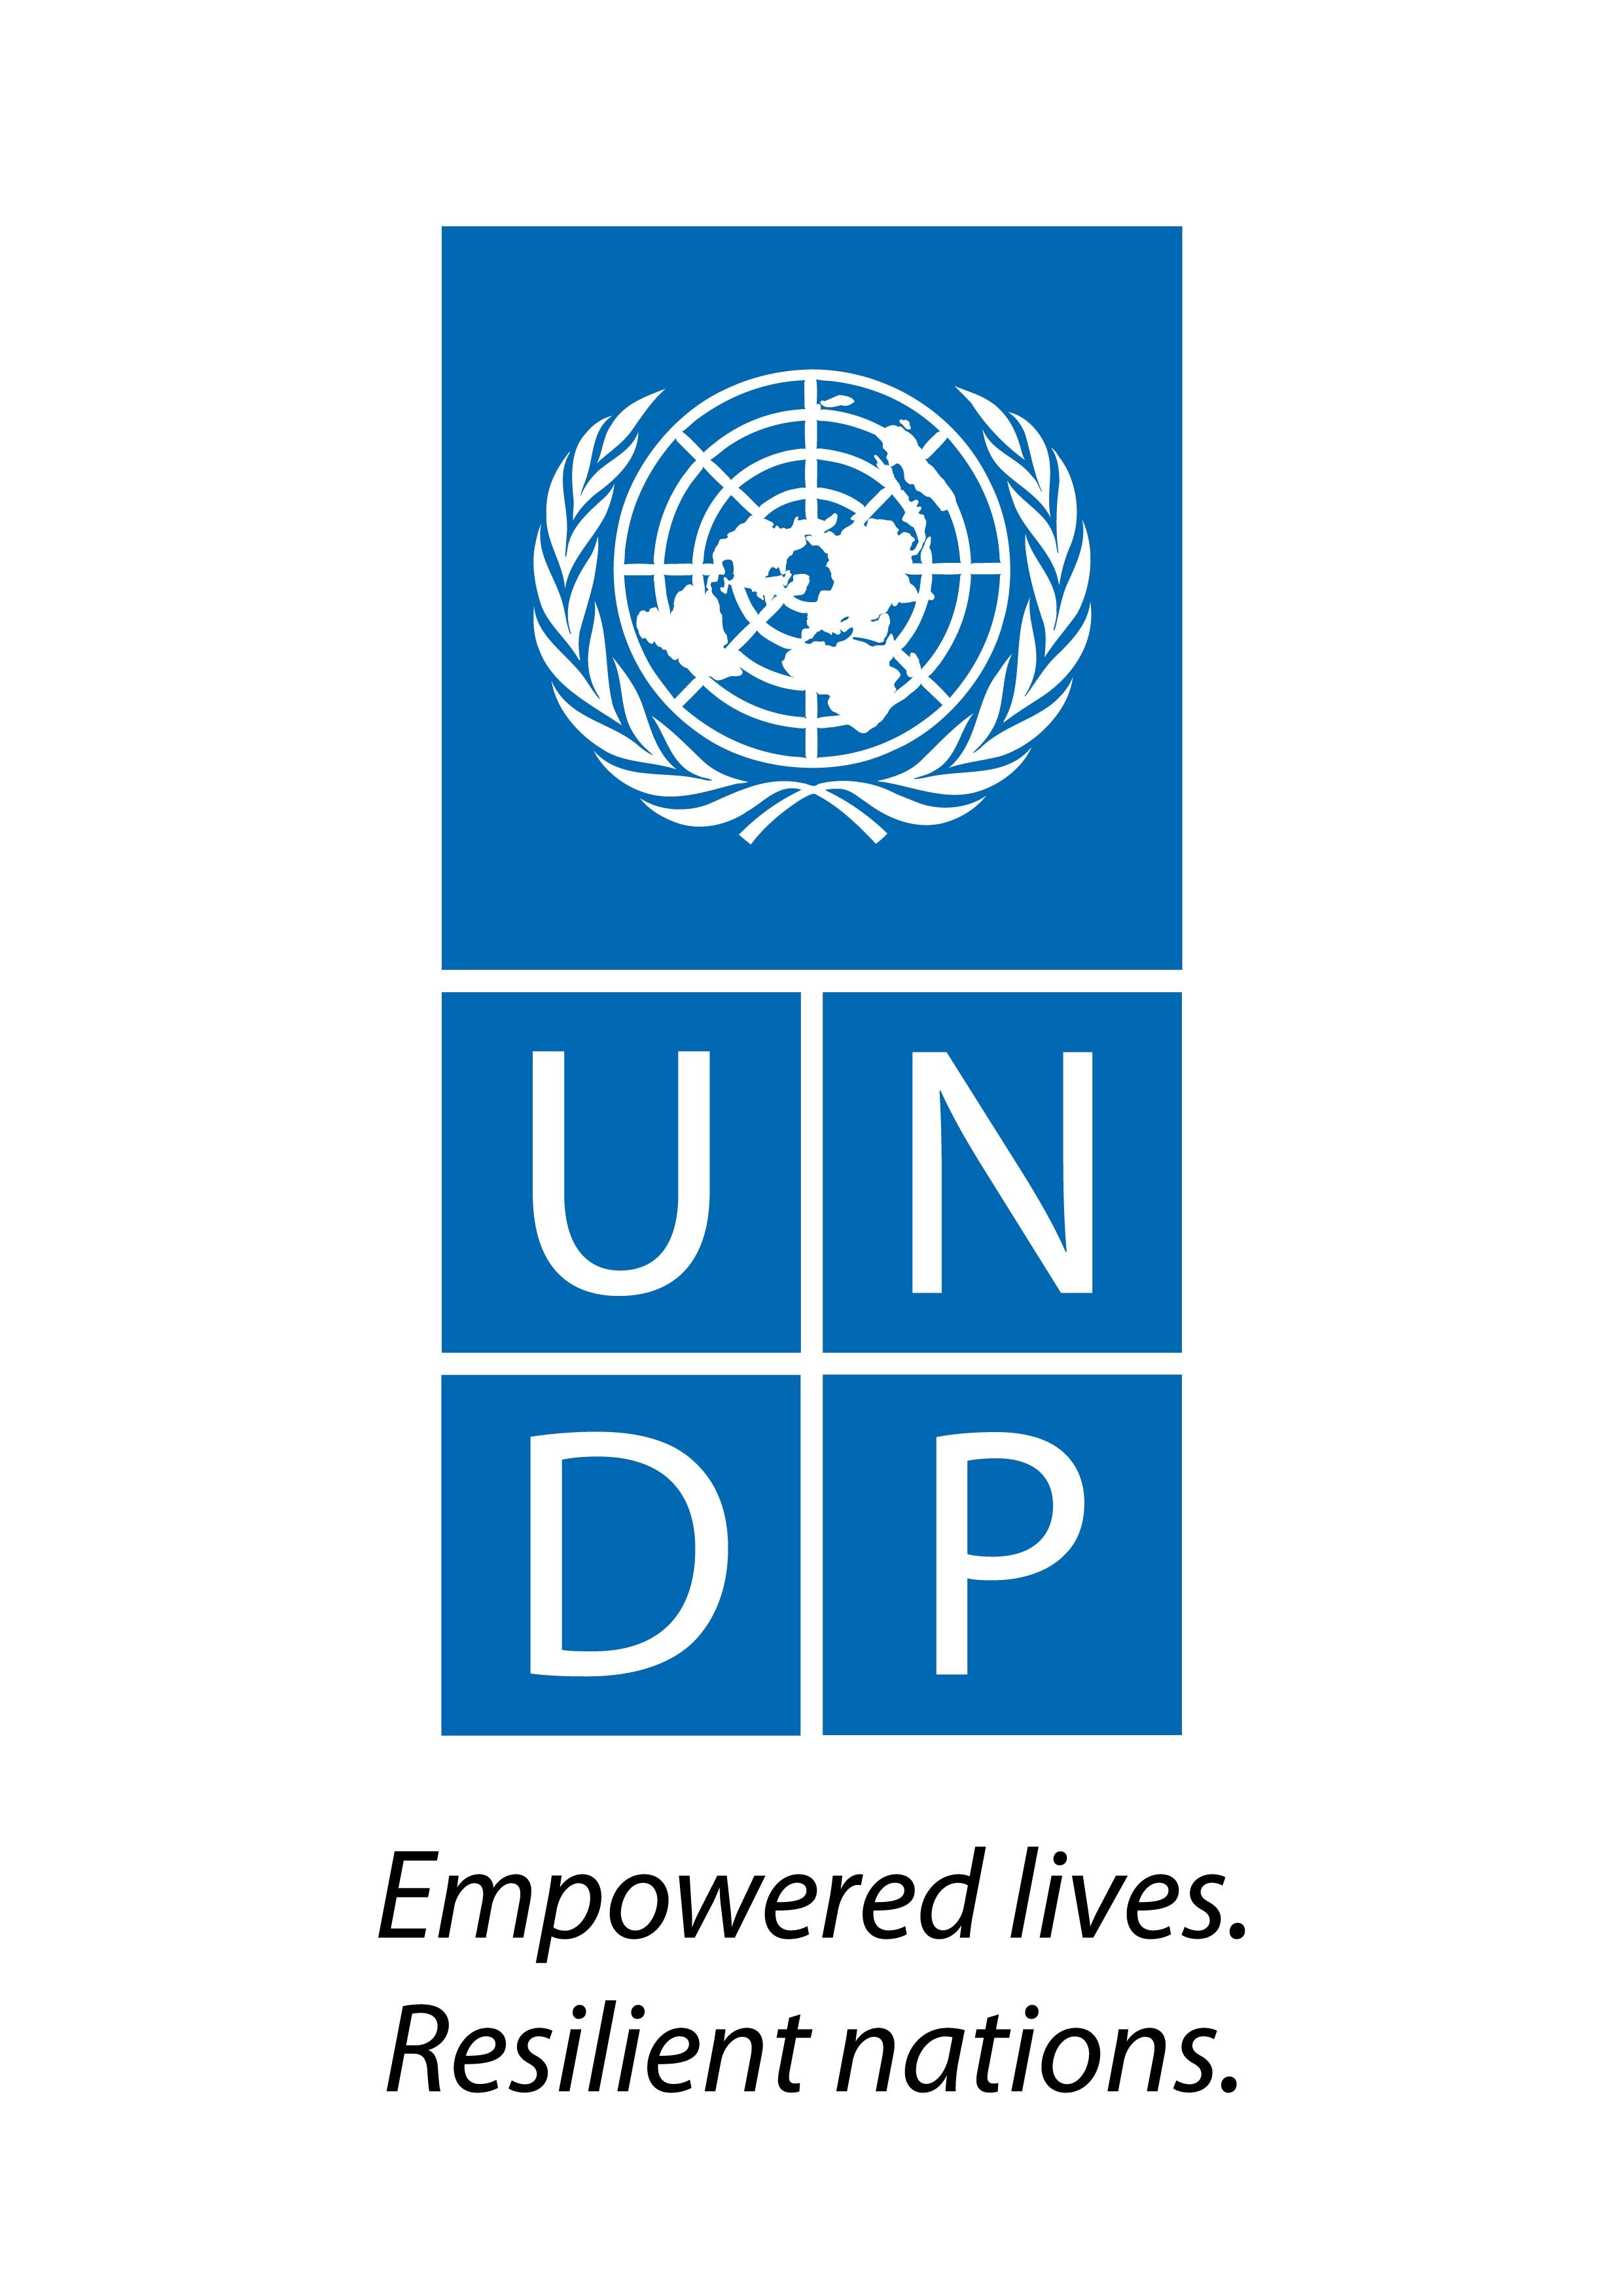 undp-logo.jpg